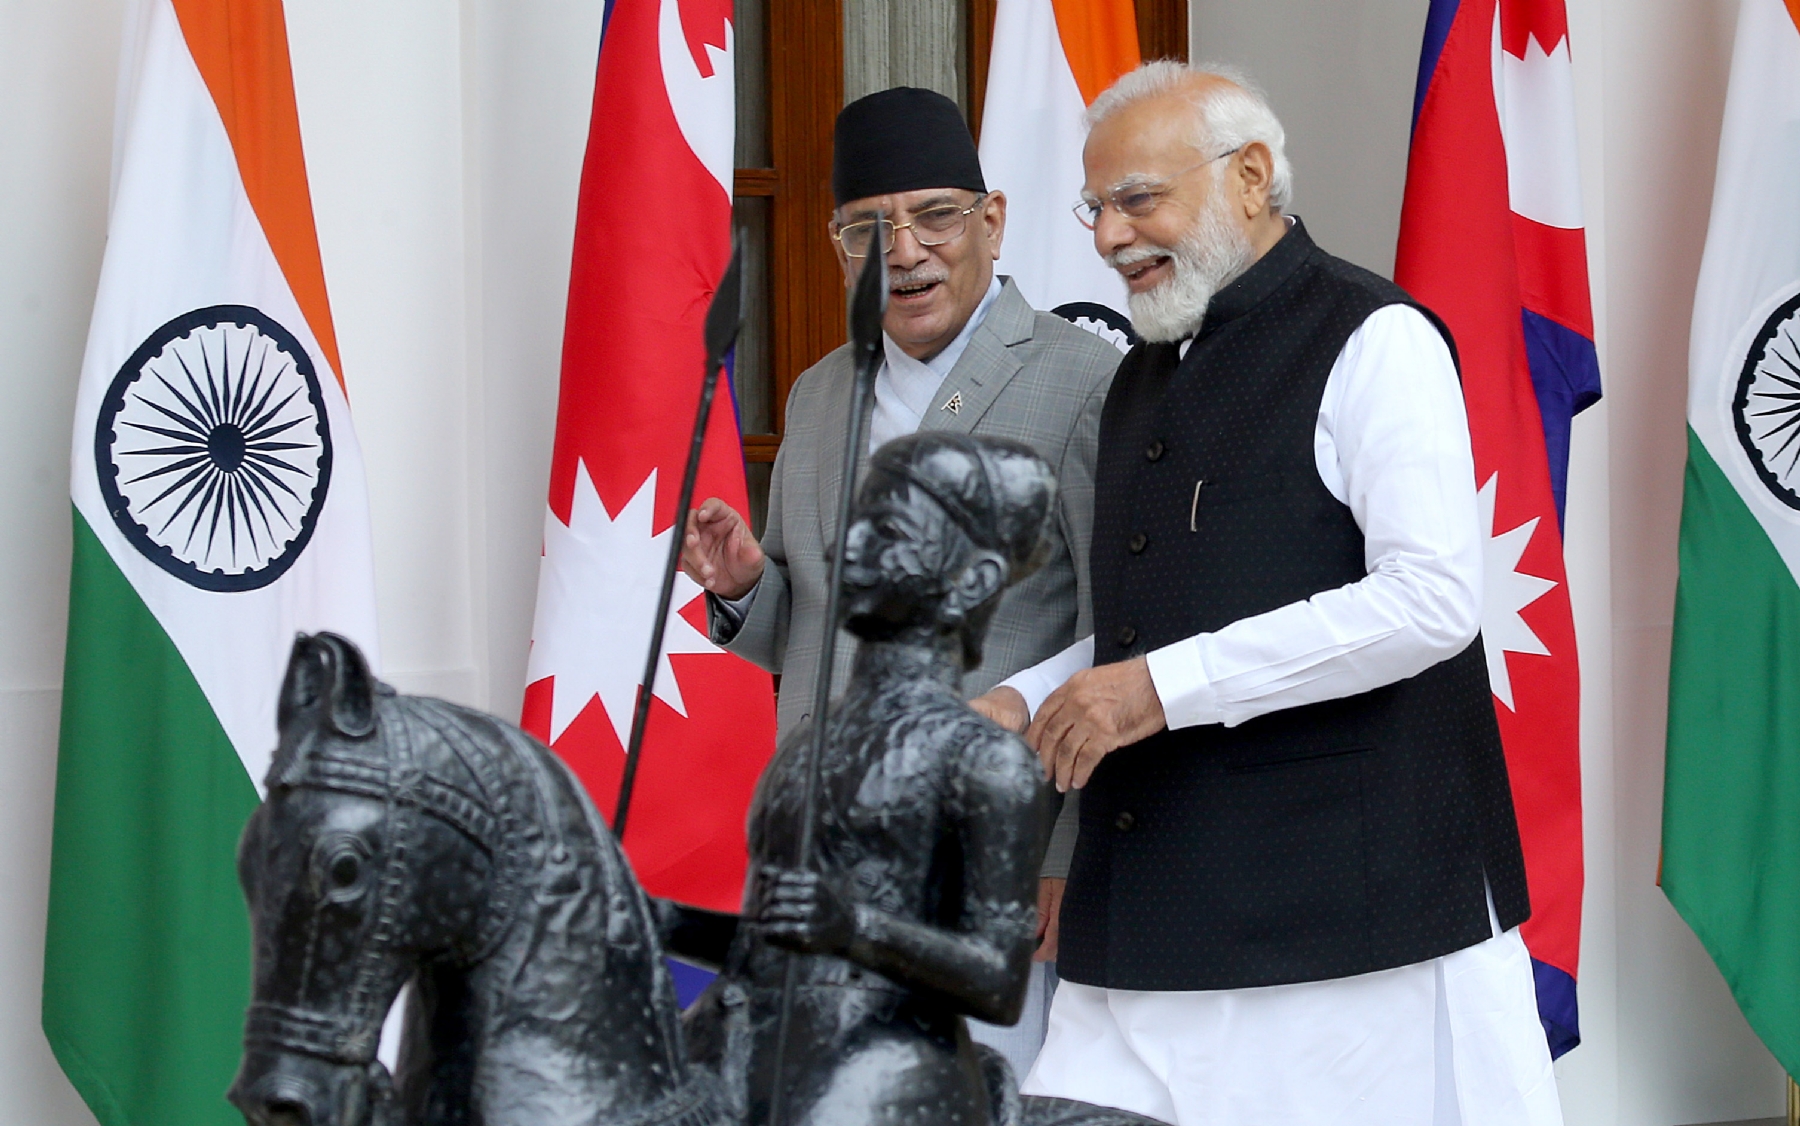 नई दिल्ली में गुरुवार 1 जून को हैदराबाद हाउस में प्रधानमंत्री नरेंद्र मोदी और नेपाल के प्रधानमंत्री पुष्प कमल दहल 'प्रचंड ने मुलाकात करते। हिंदुस्थान समाचार/ फोटो गणेश बिष्ट